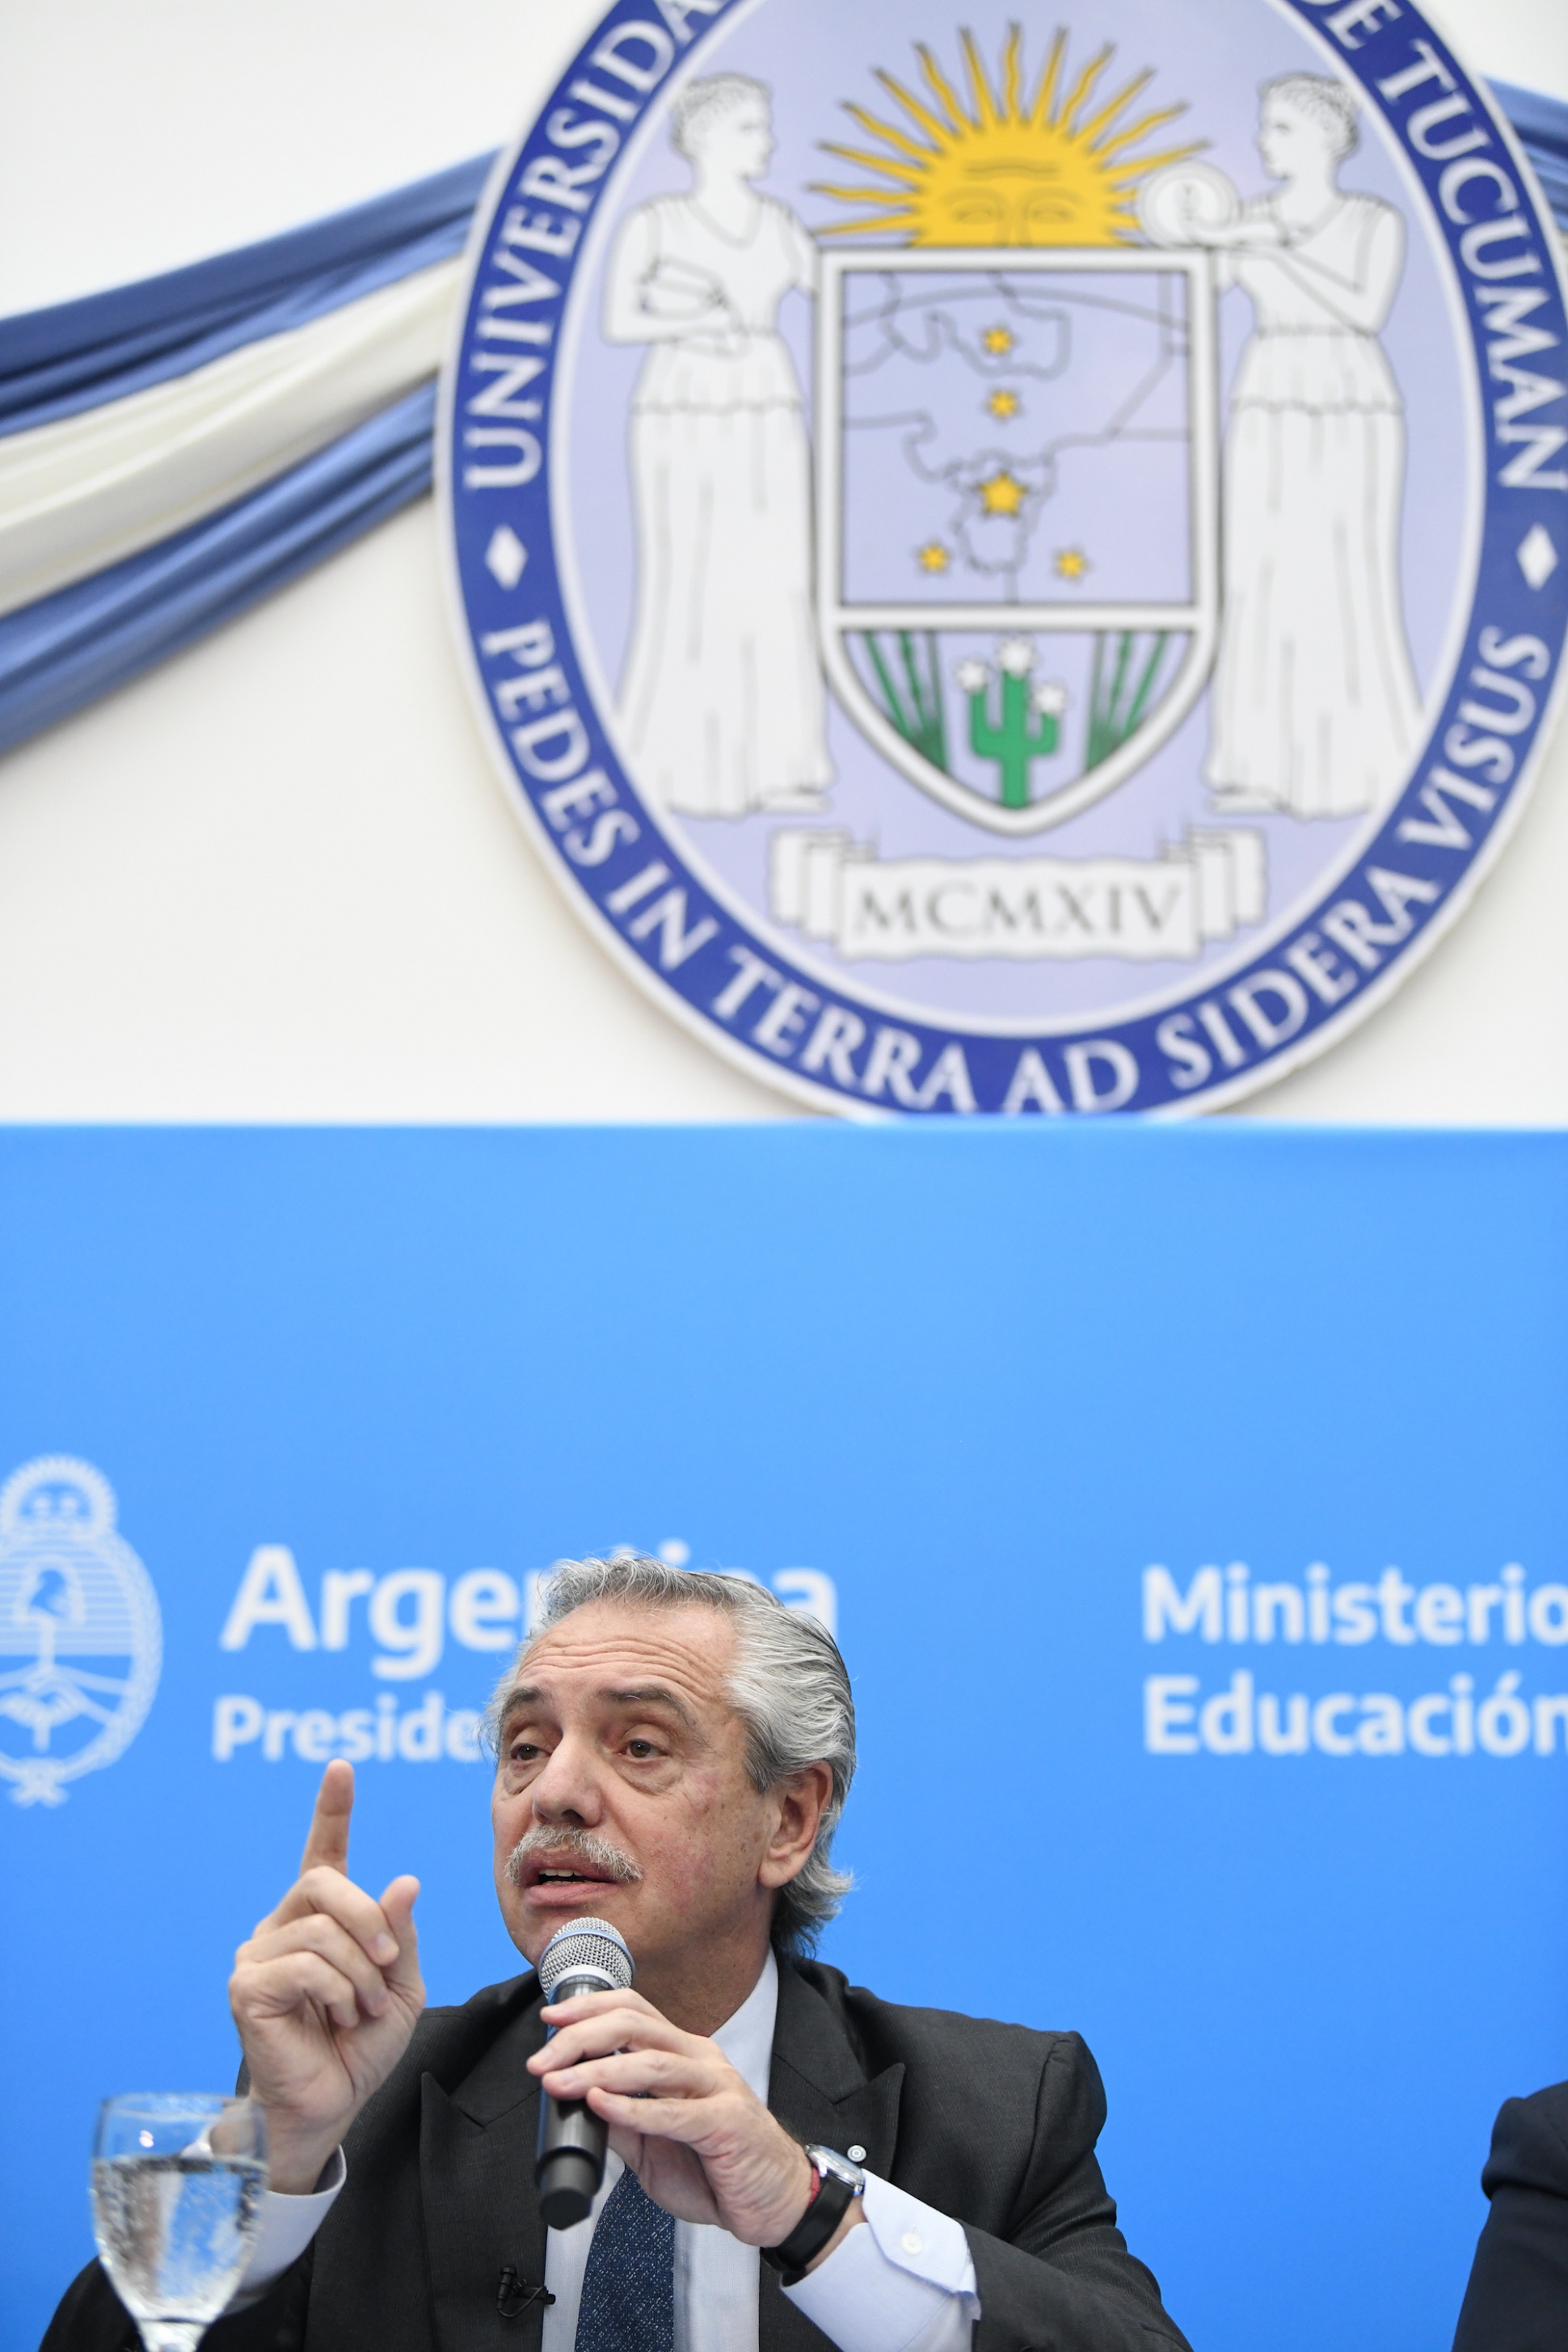 El presidente inauguró el edificio de la Facultad de Bioquímica, Química y Farmacia de la Universidad Nacional de Tucumán